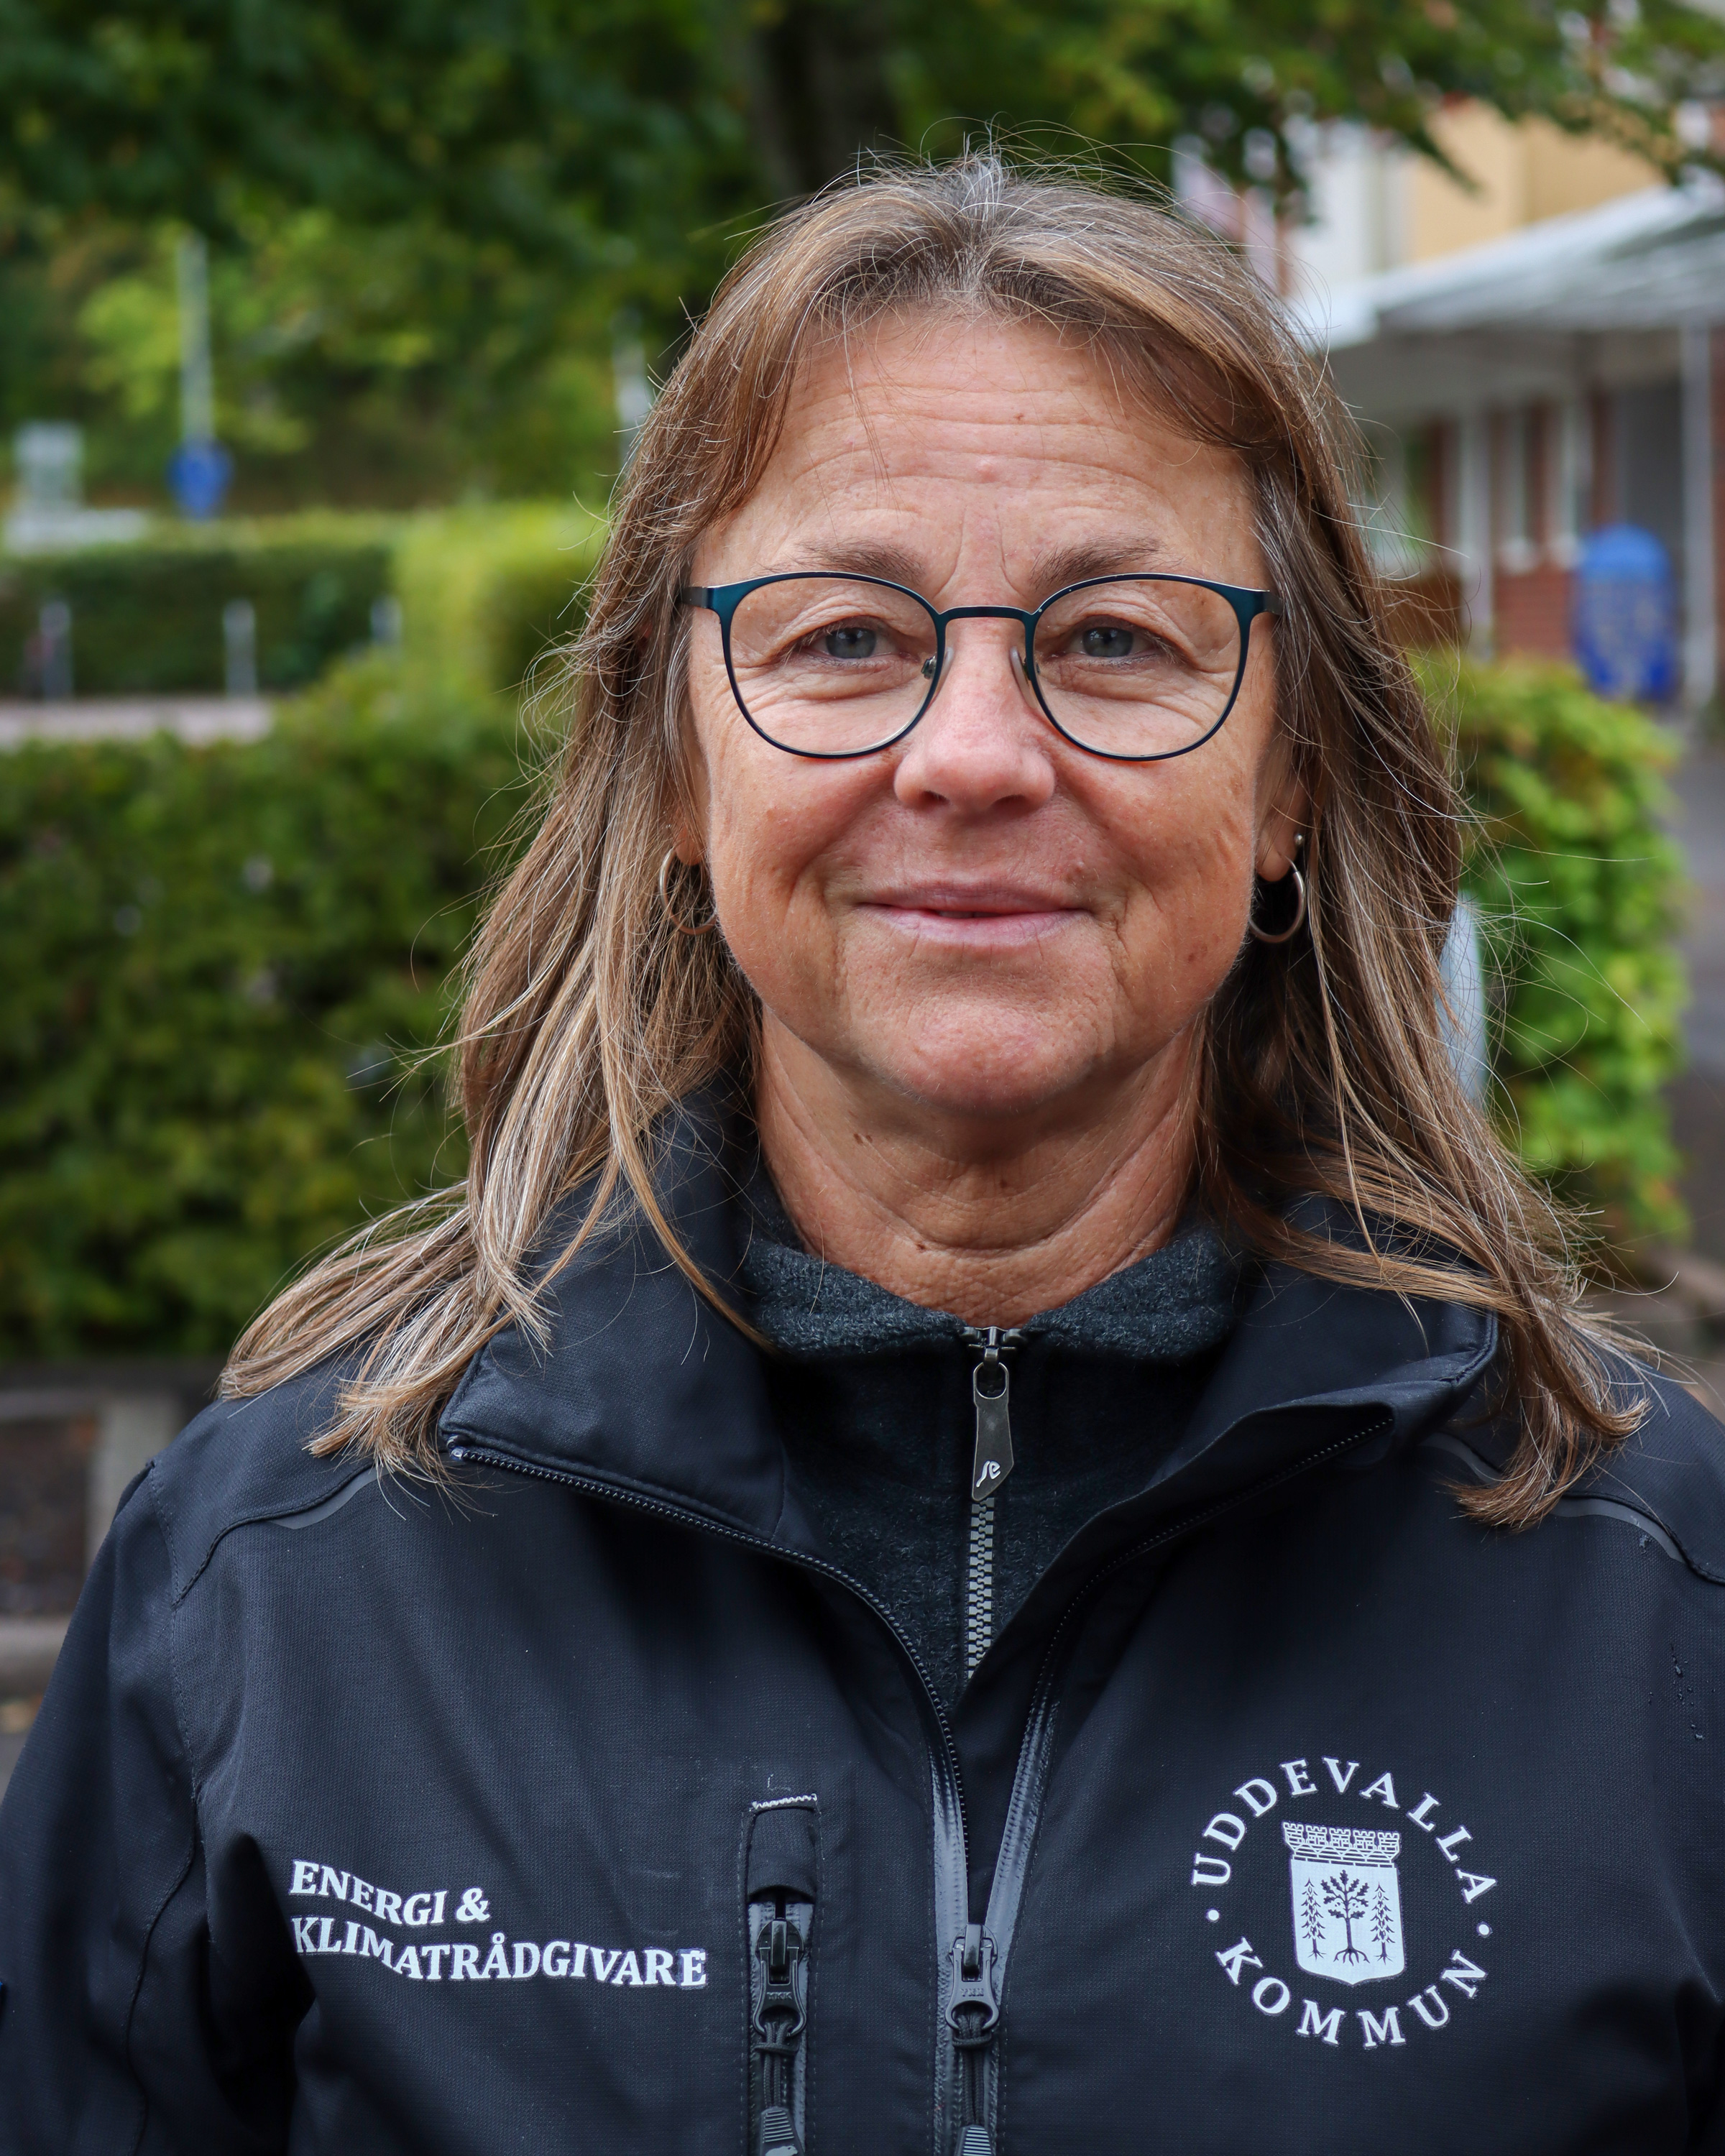 energi- och klimatrådgivare Eva Ginstrup